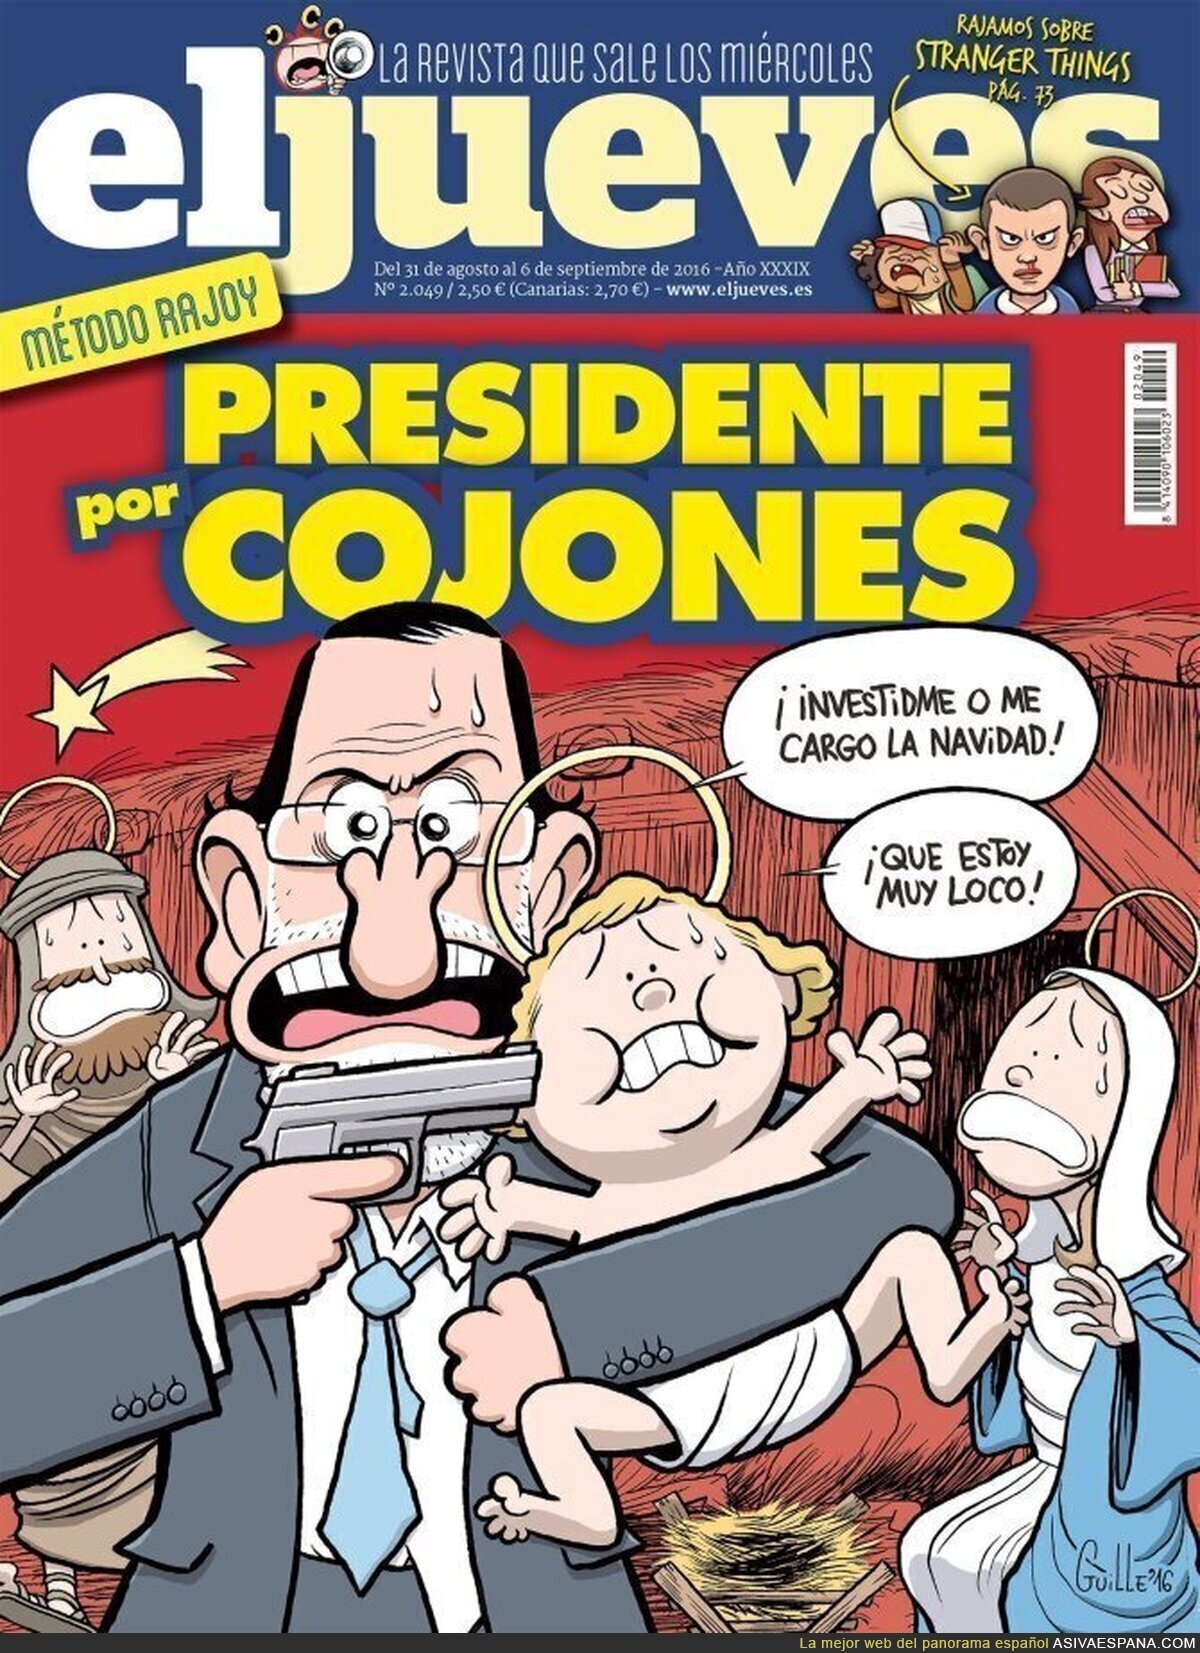 La portada de El Jueves ante la investidura de Rajoy